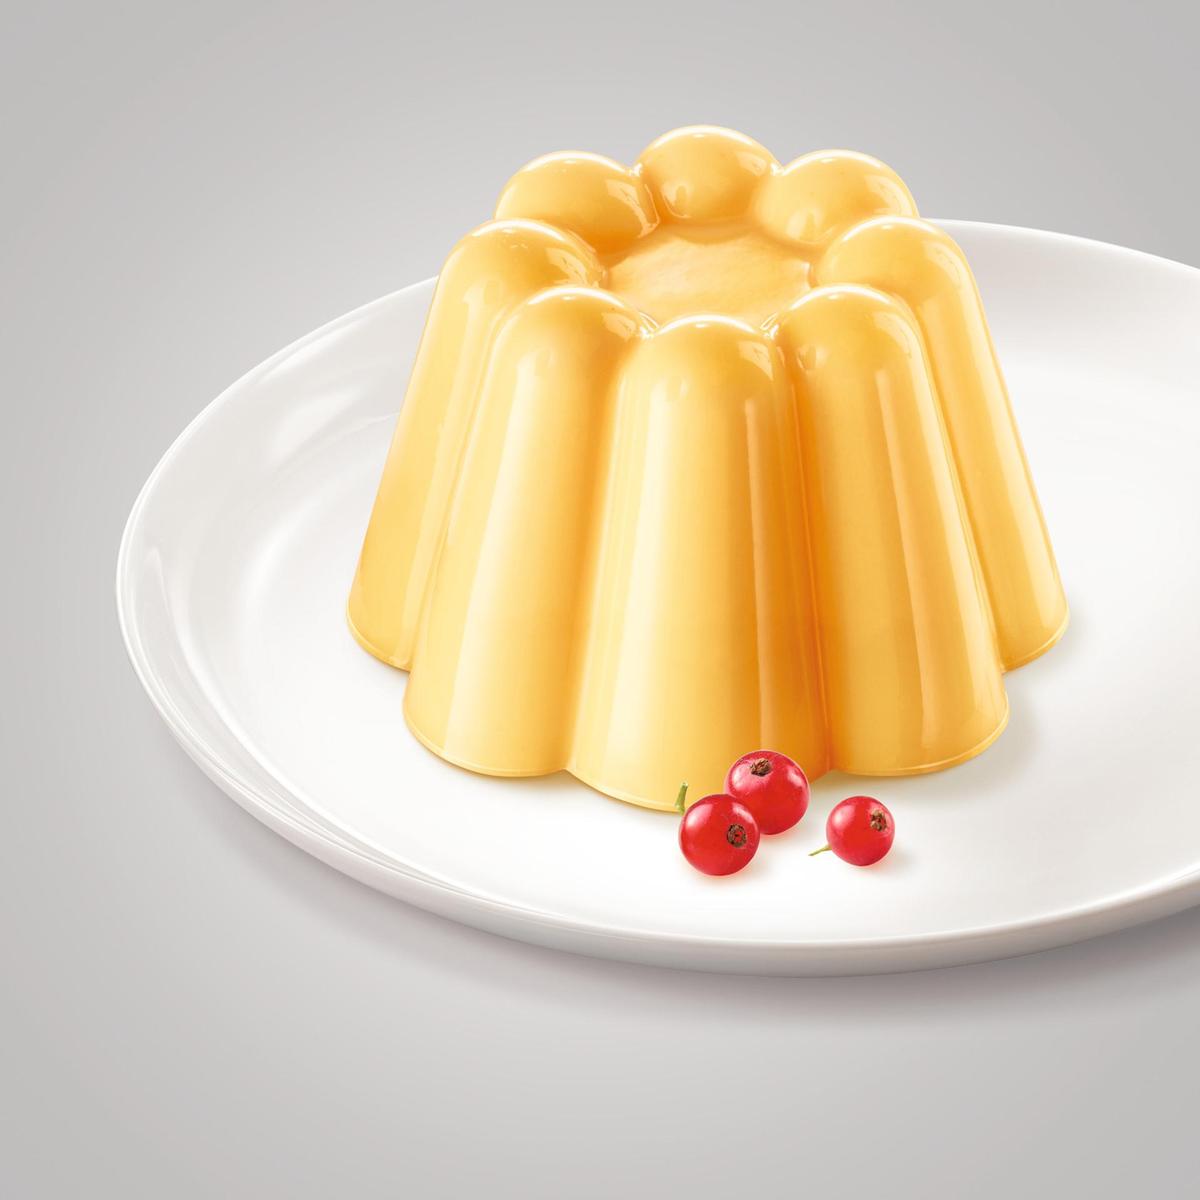 1-39-202005 klassischer pudding vanille-